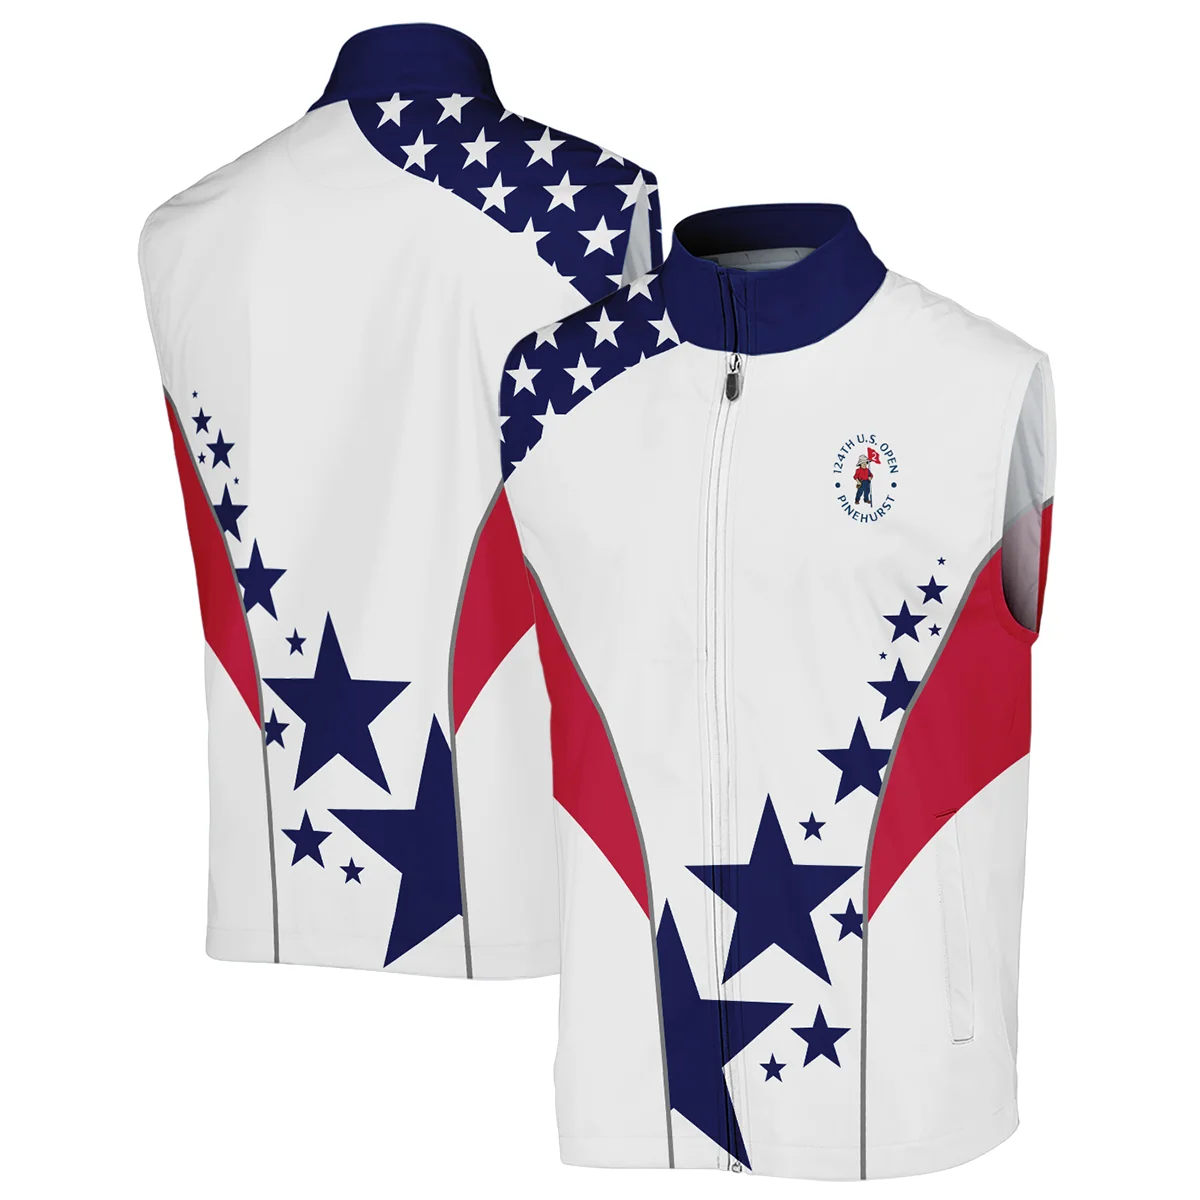 124th U.S. Open Pinehurst Rolex Stars US Flag White Blue Mandarin collar Quater-Zip Long Sleeve